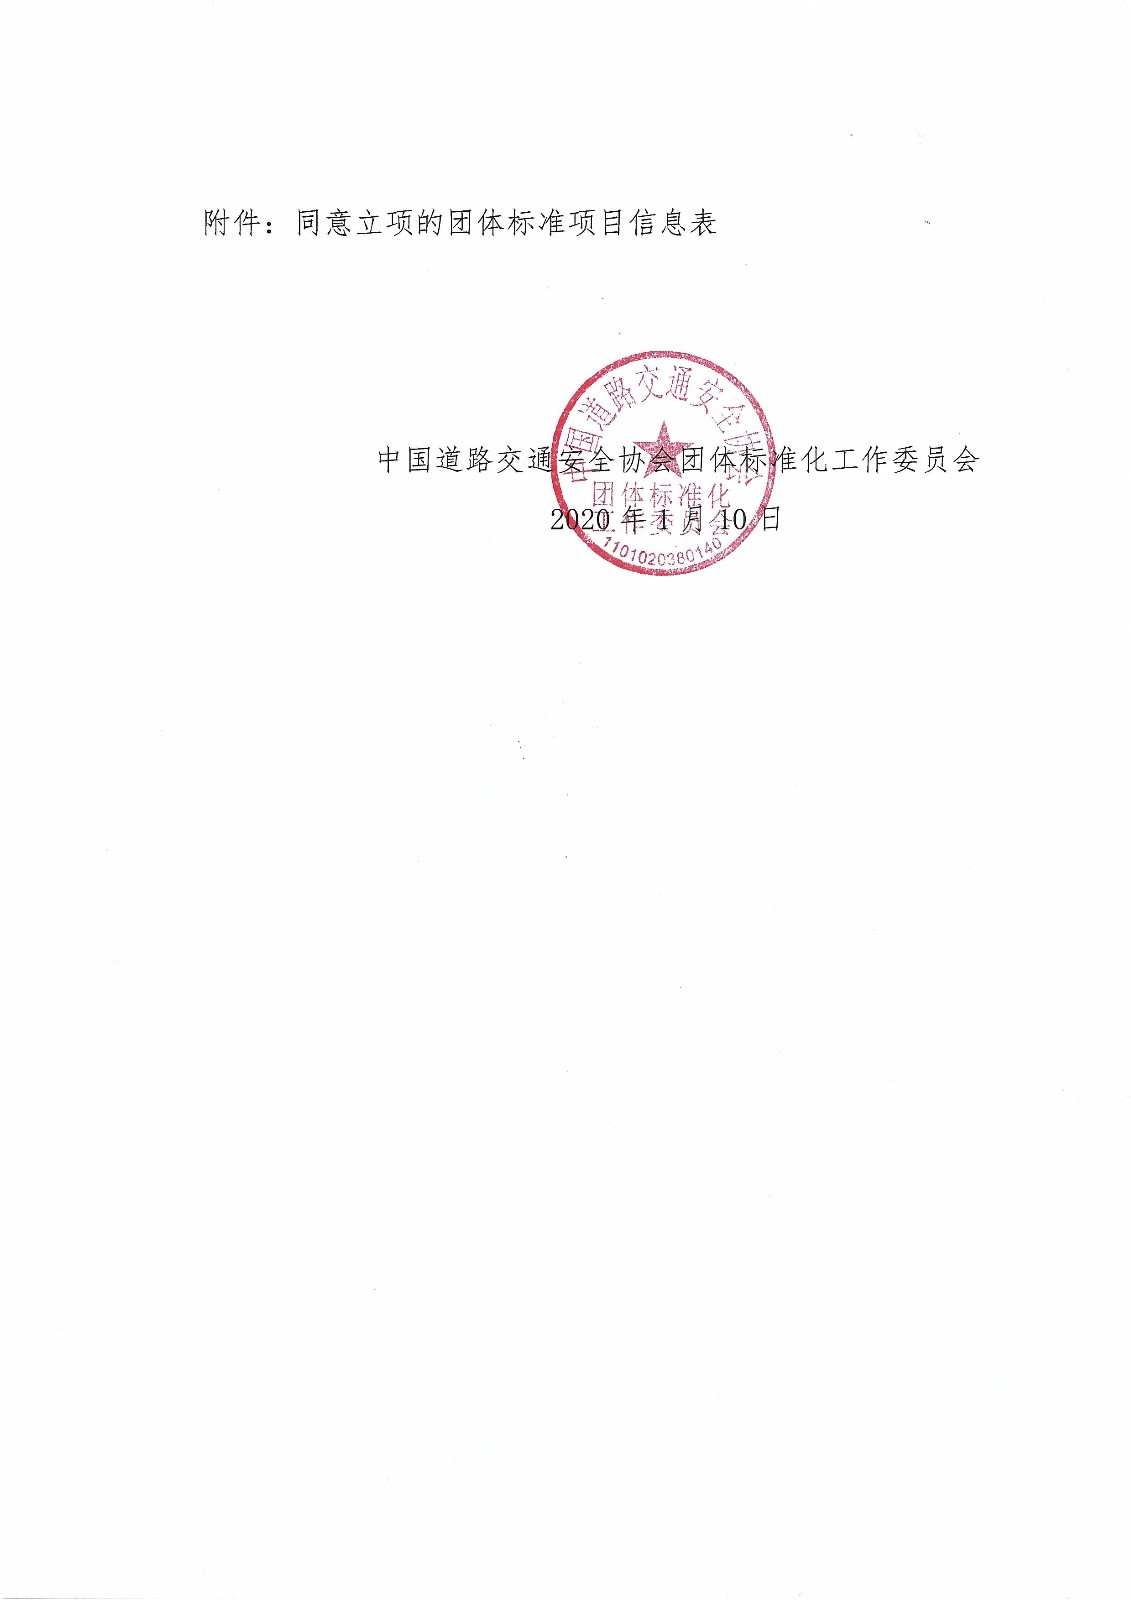 011016323245_0中国道路交通安全协会关于2020年第一批团体标准立项的通知_2.jpg